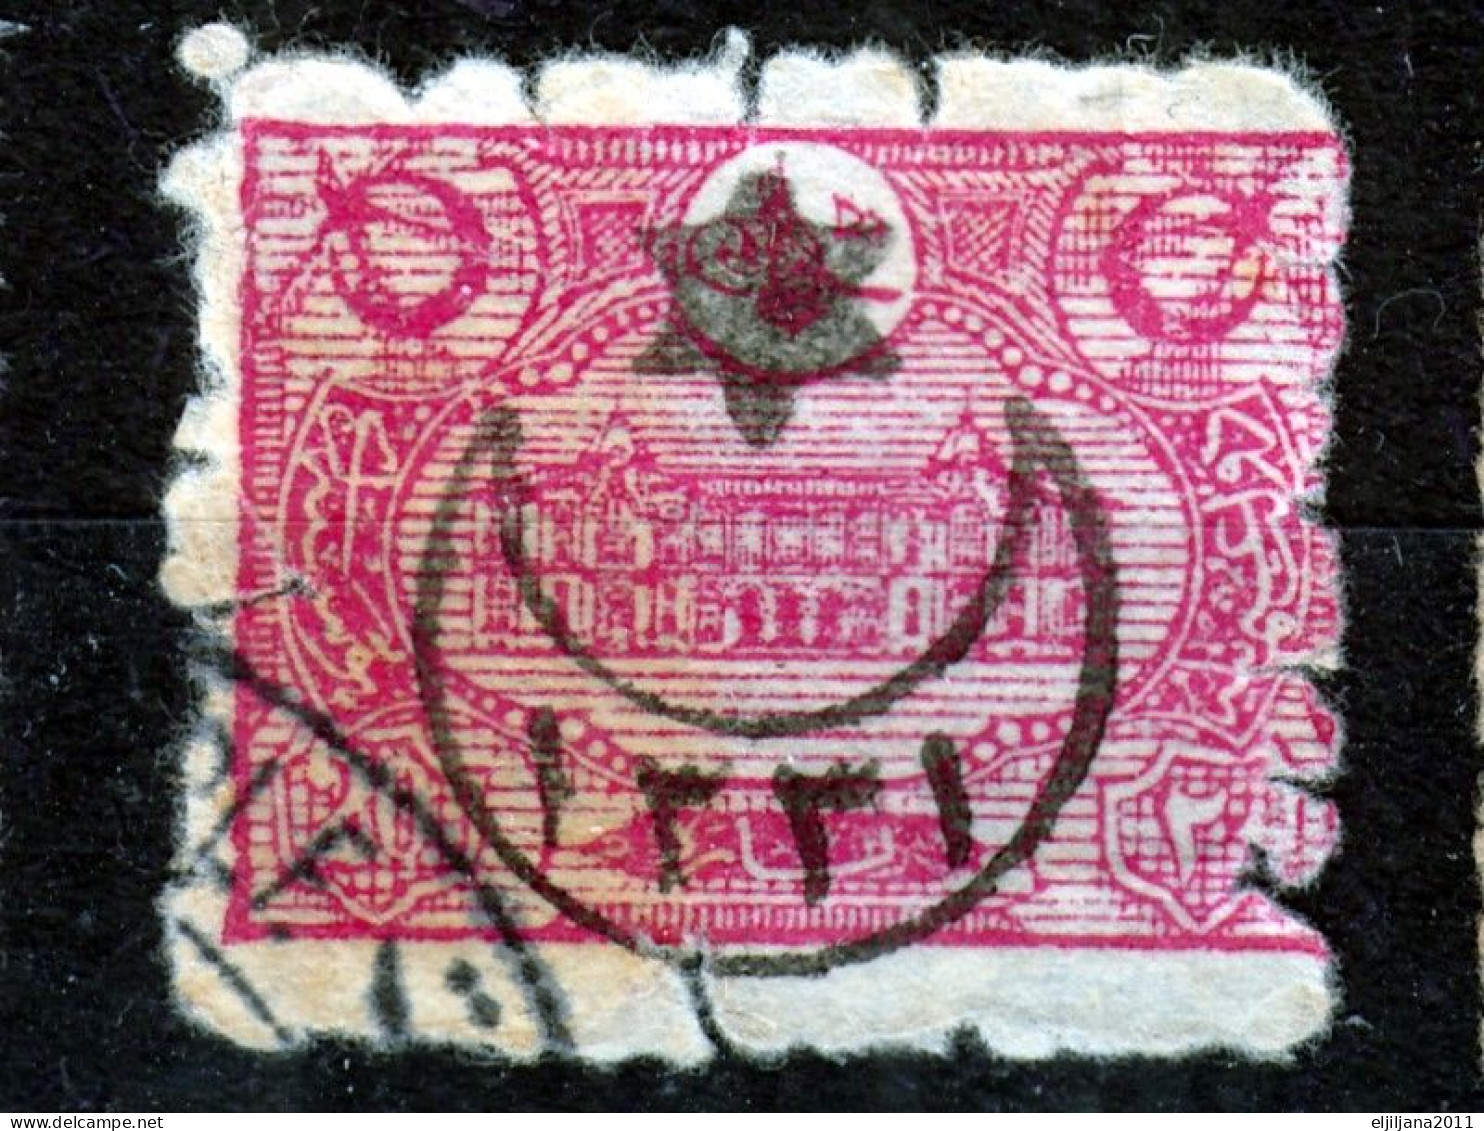 Turkey / Türkei 1915 ⁕ Overprint Year 1331 ( On Mi.215 ) Mi. 320 ⁕ 5v Used - Used Stamps